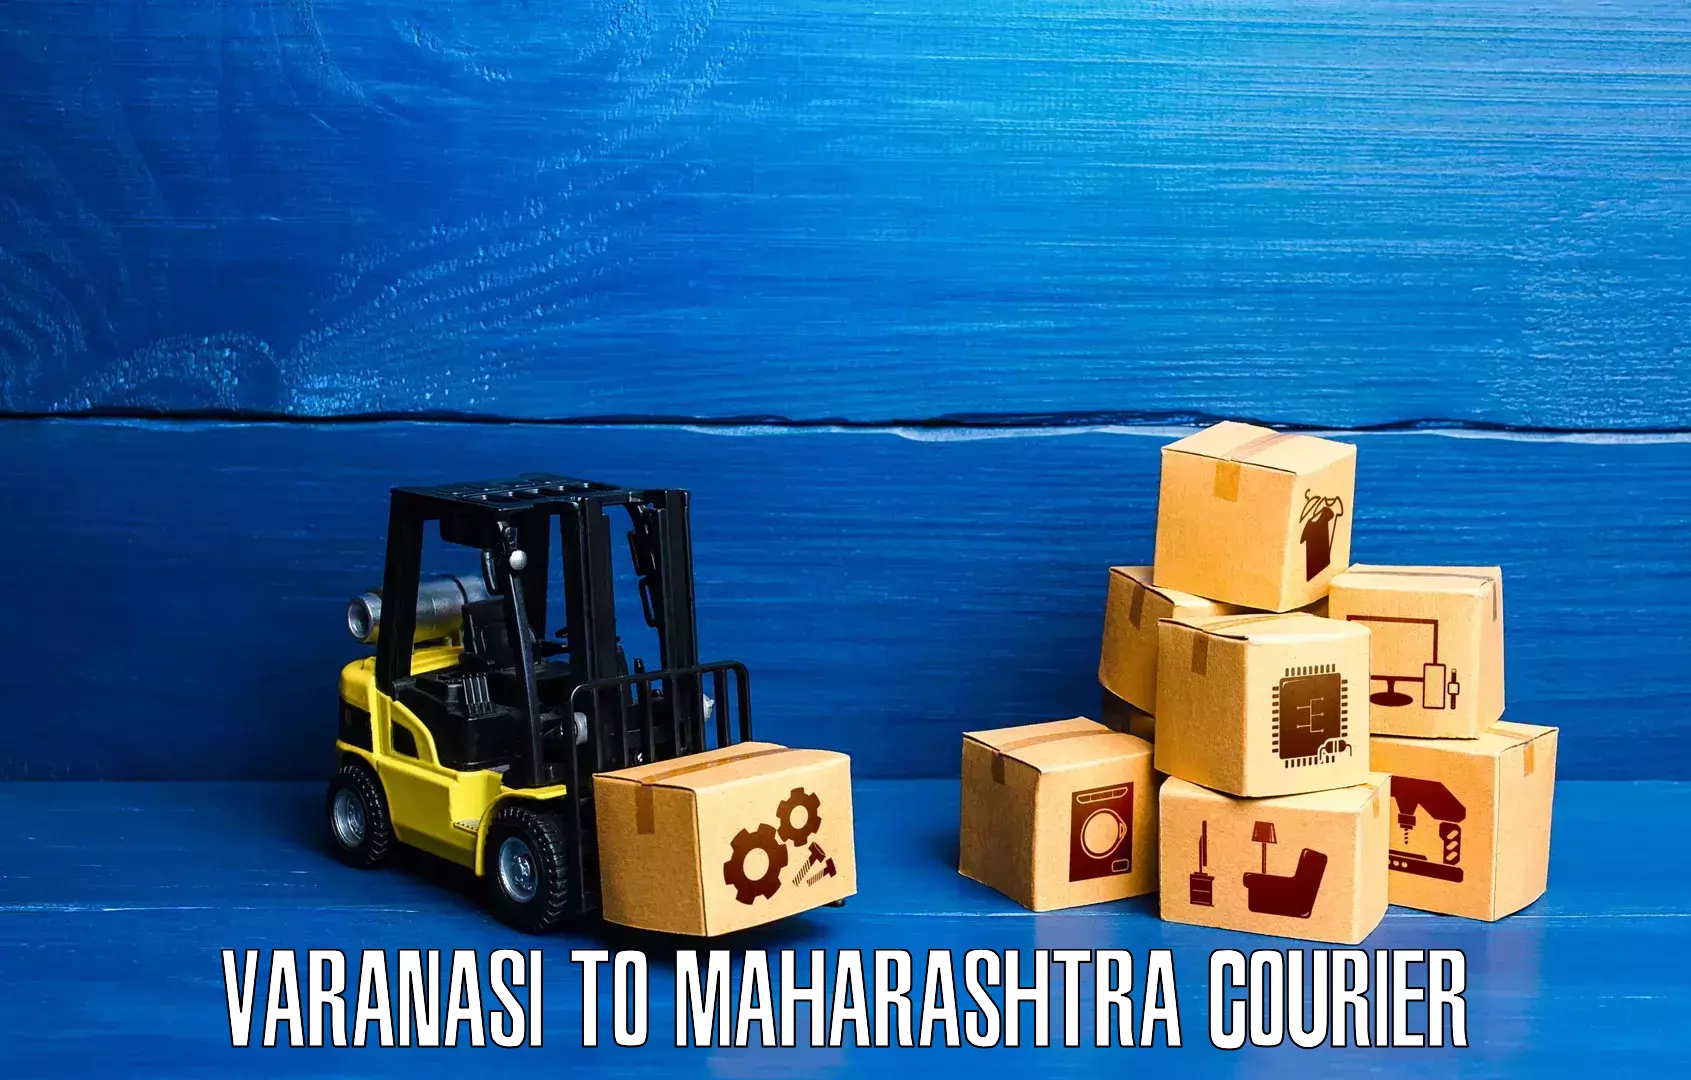 Personal courier services Varanasi to Maharashtra